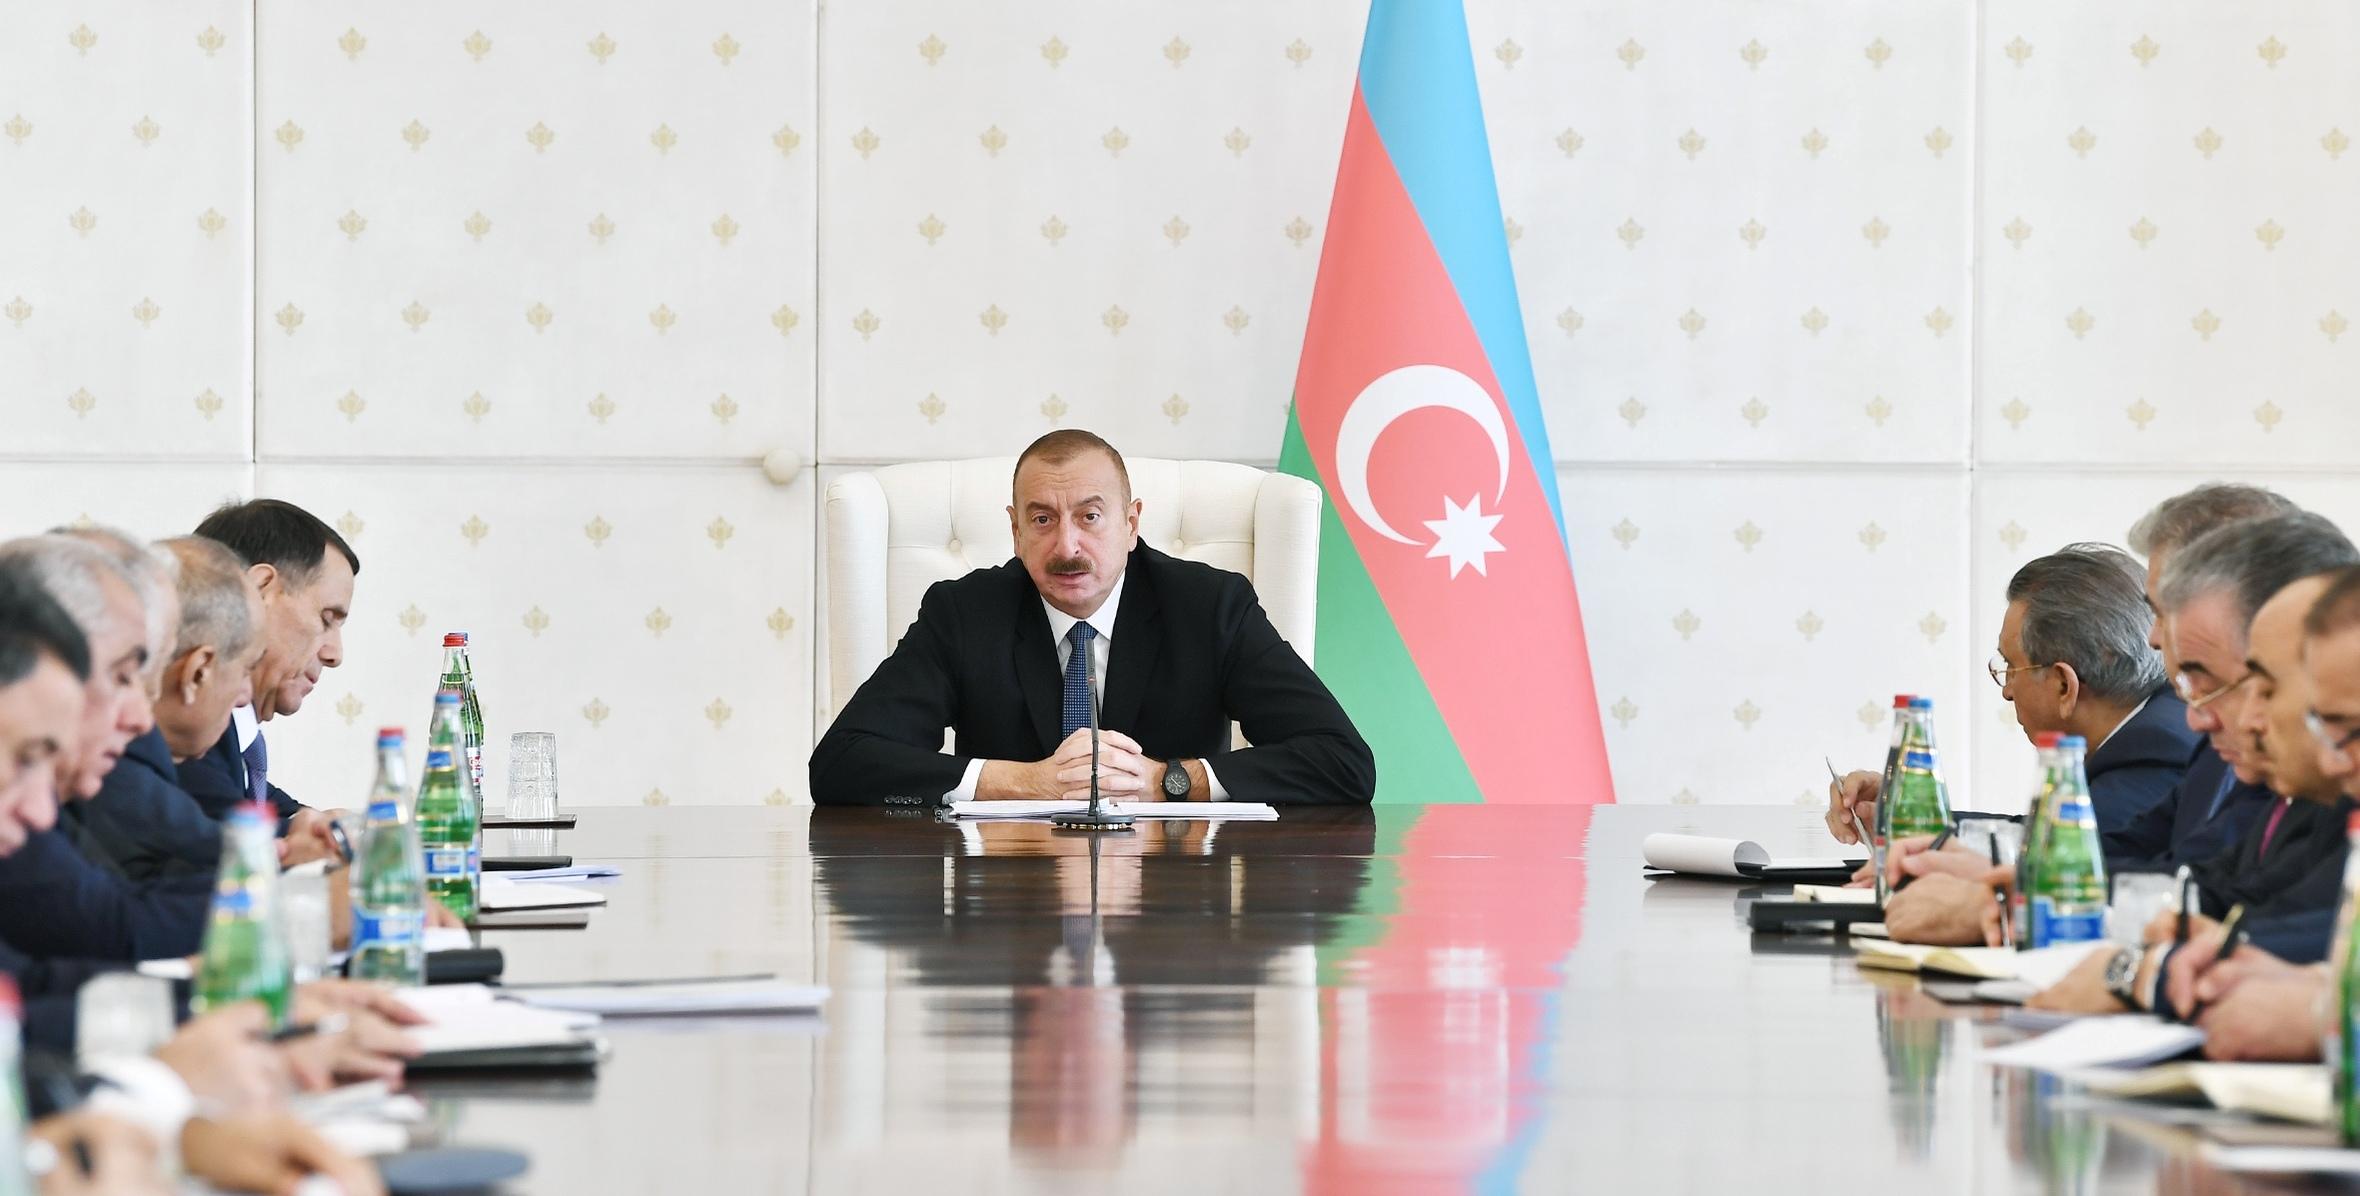 Вступительная речь Ильхама Алиева на заседание Кабинета Министров, посвященное итогам социально-экономического развития за девять месяцев 2018 года и предстоящим задачам